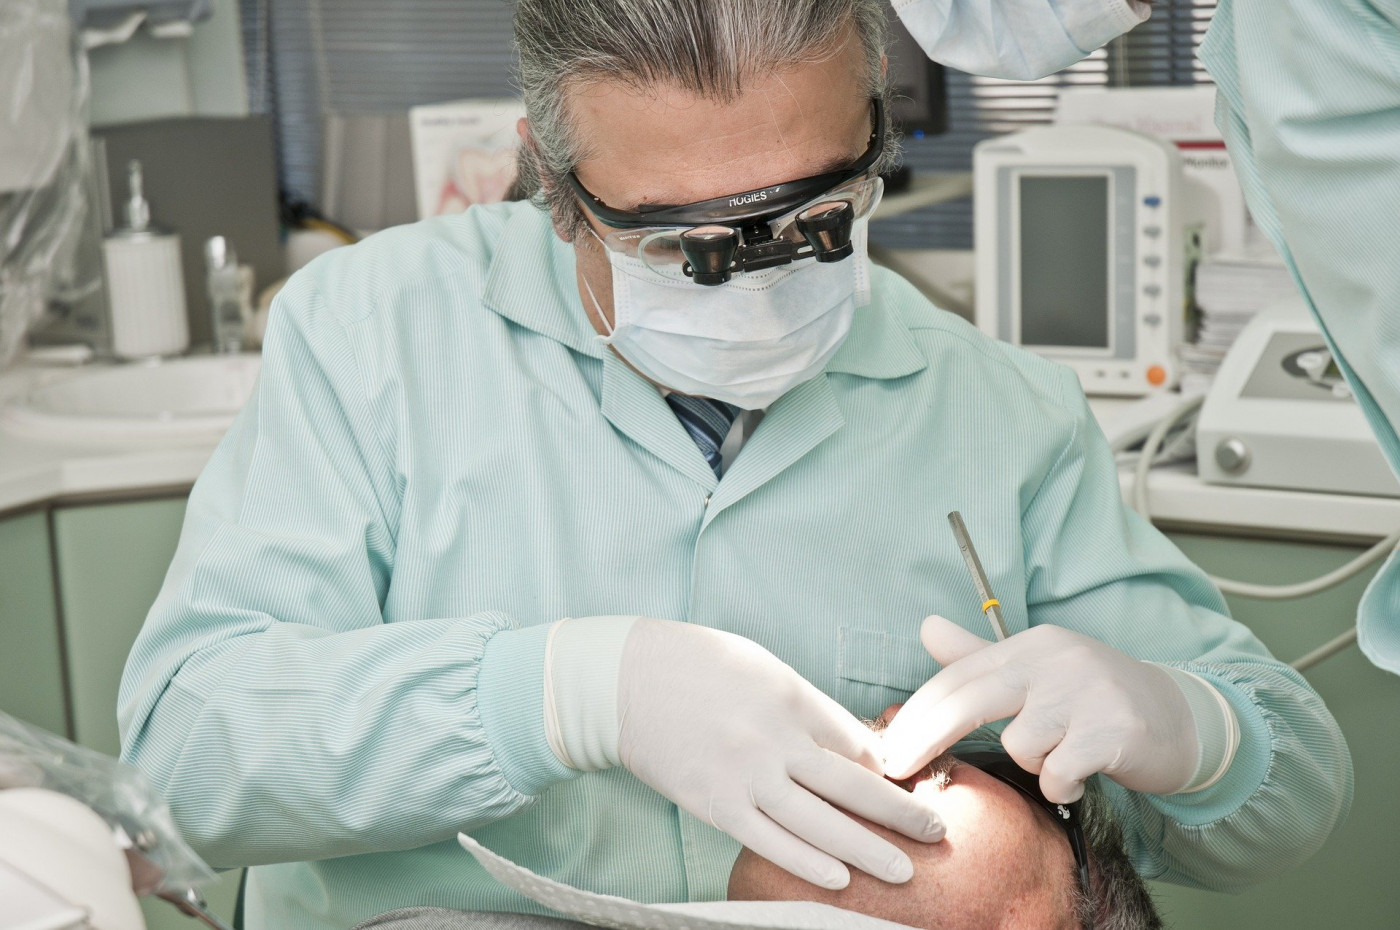 Dentista avalia saúde bucal de paciente dentro de um consultório